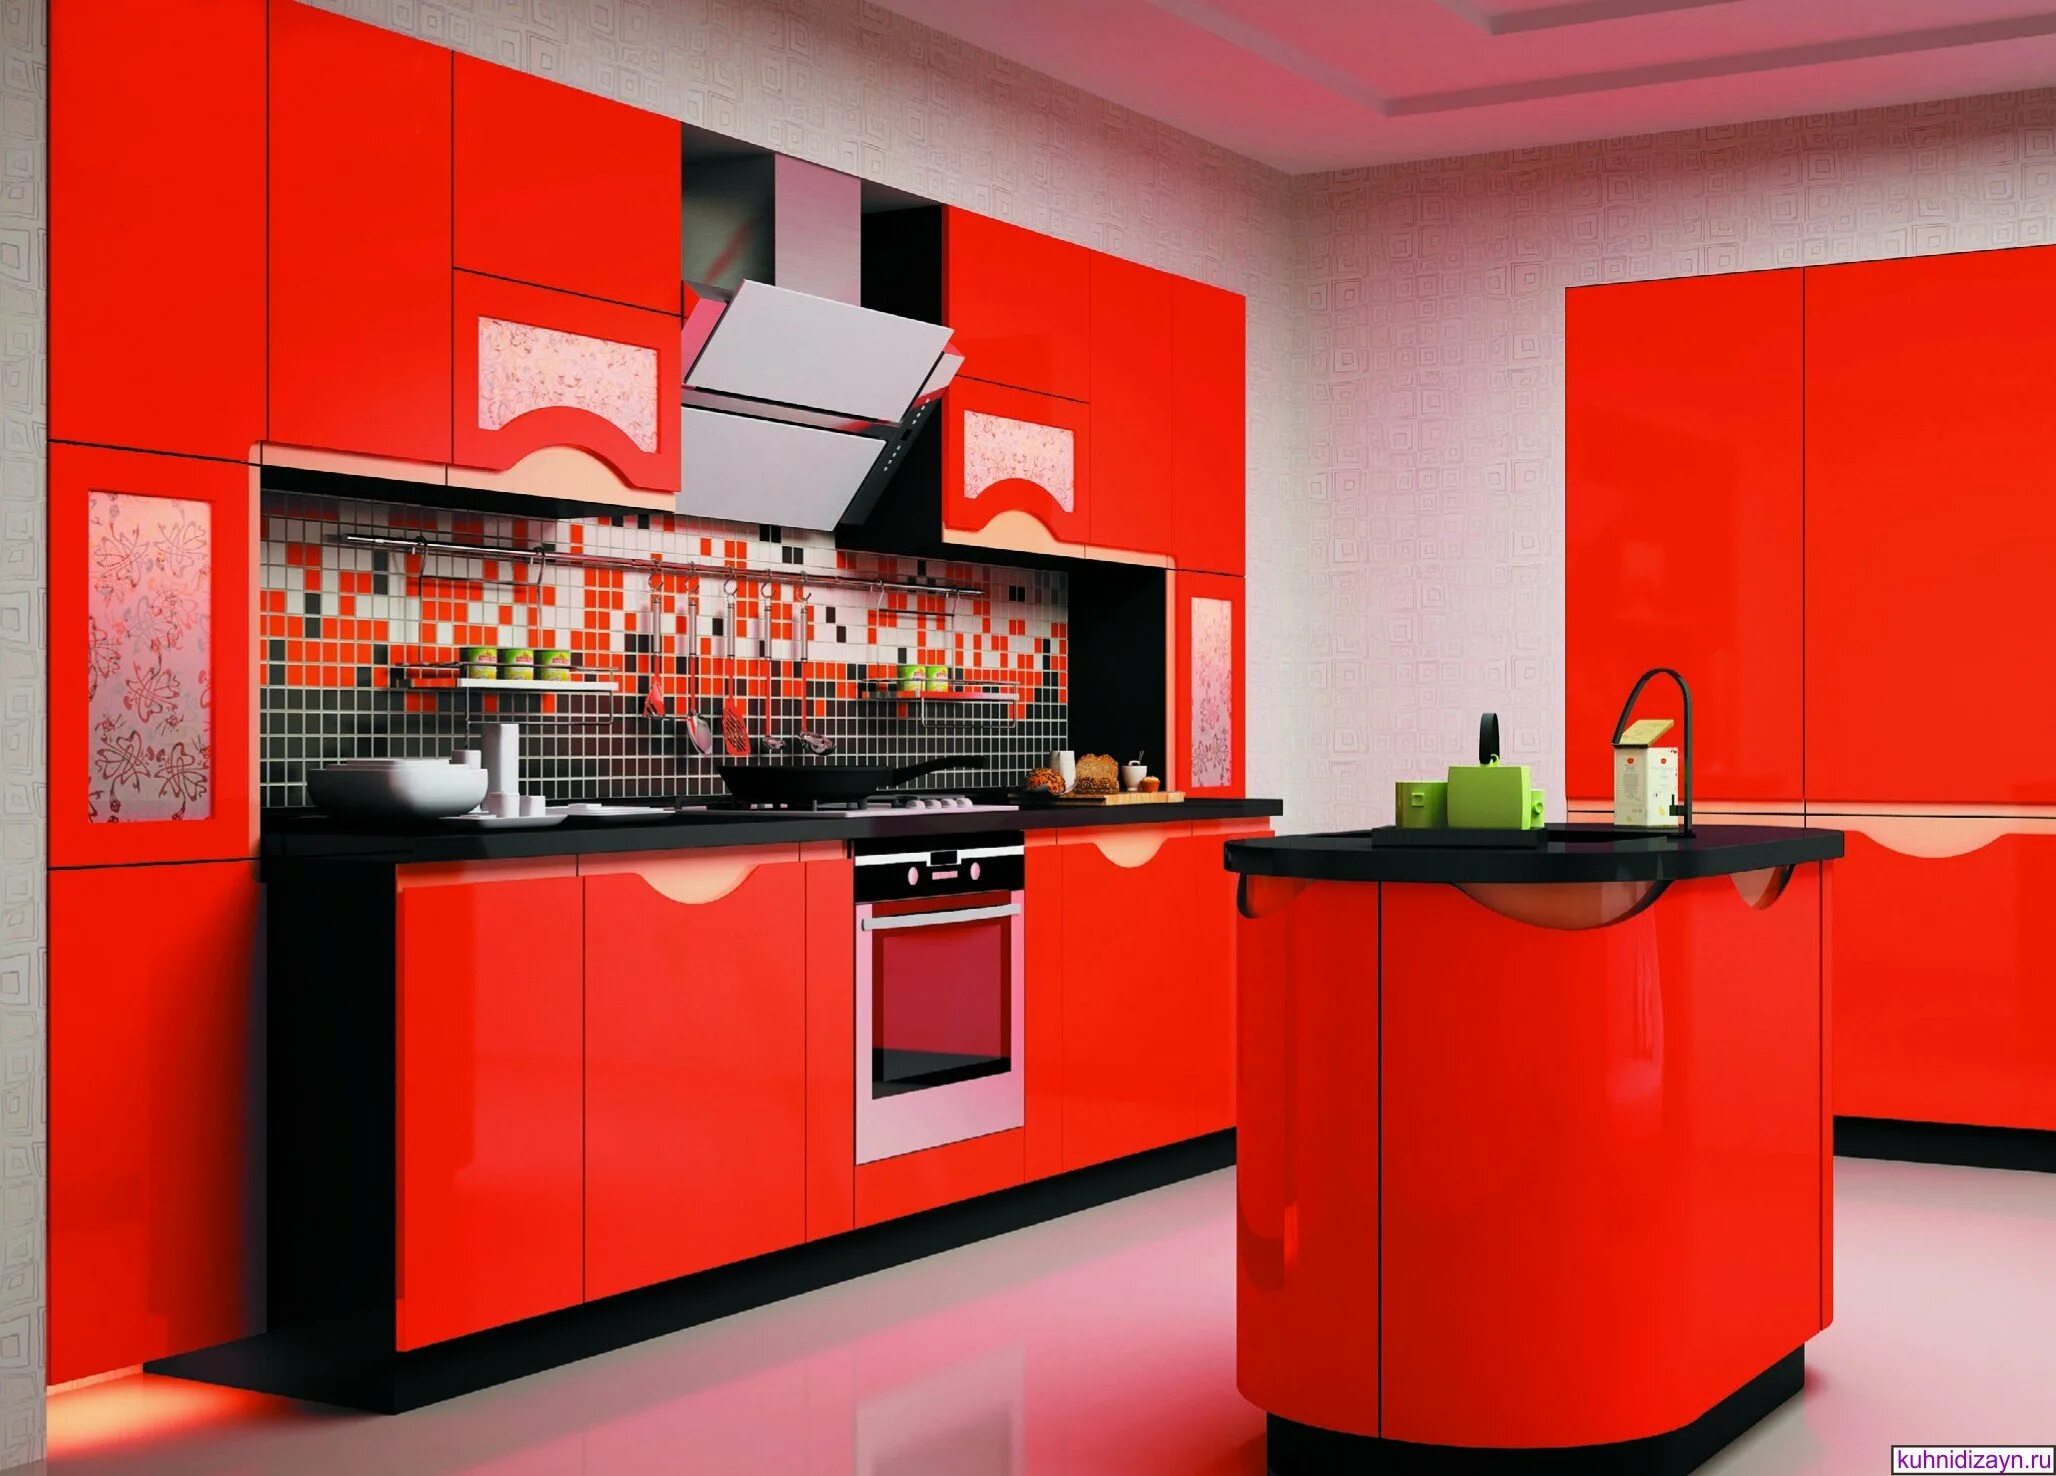 Красные кухни. Красивая яркая кухня. Кухня в Красном цвете. Красивый кухонный гарнитур. Идеальный красный цвет